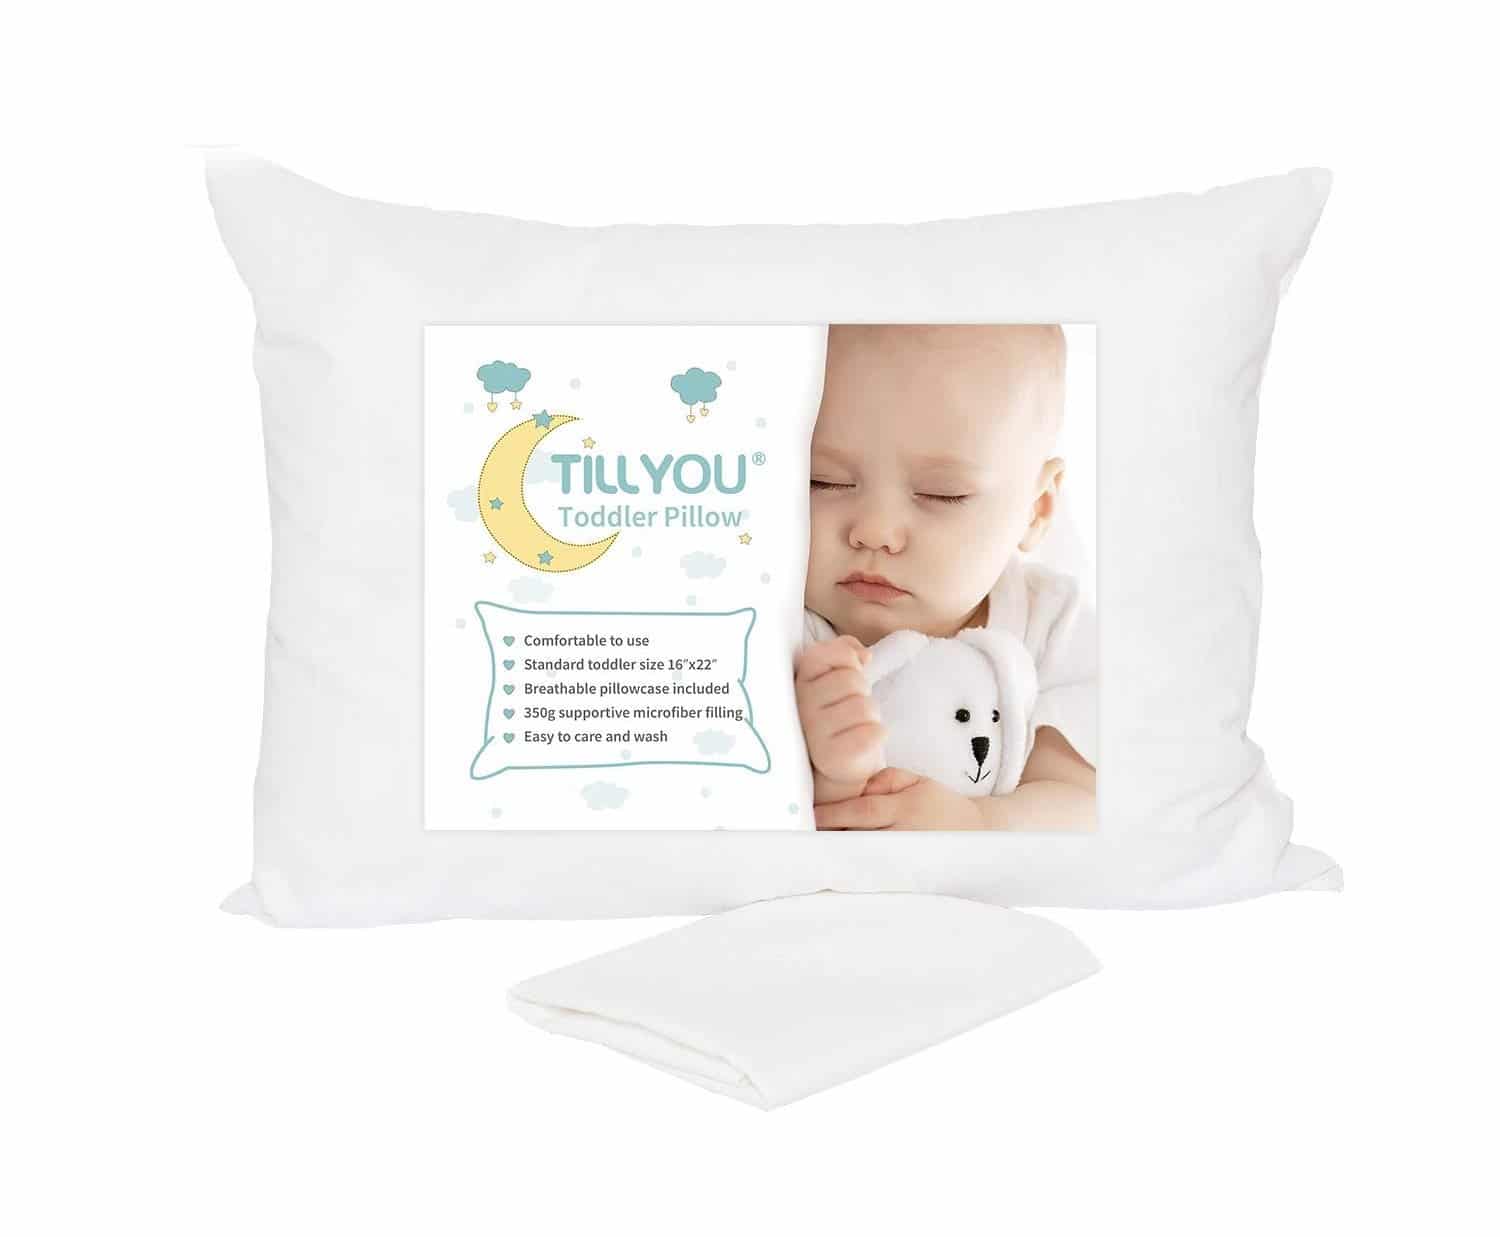 TILLYOU Toddler Pillow